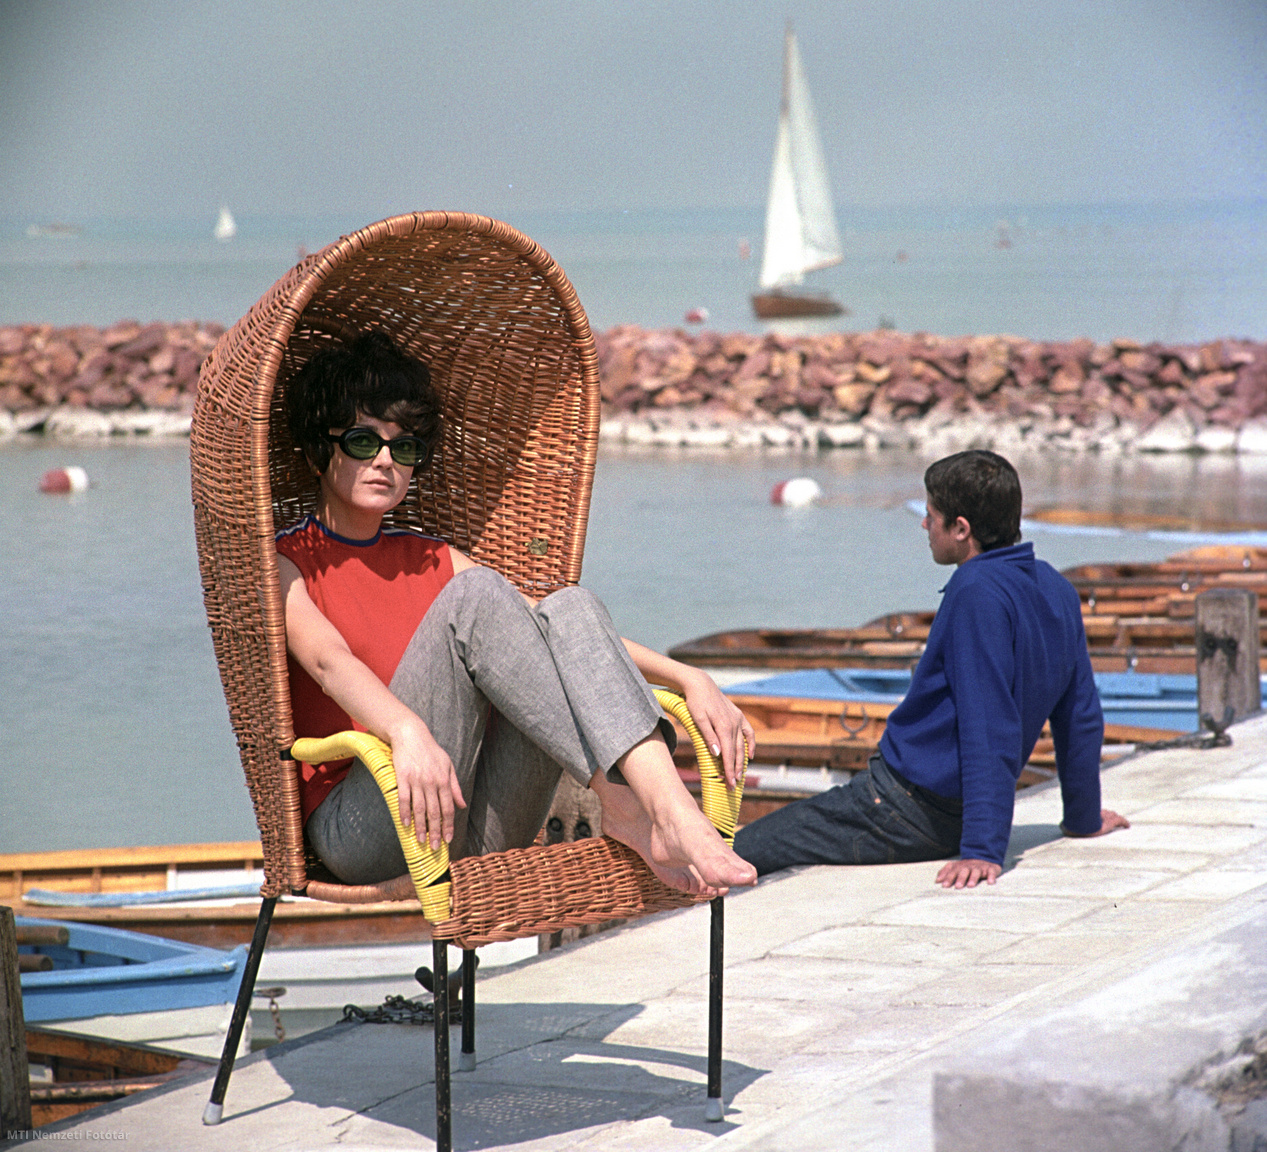 1968. június 18. Vellai Zsuzsanna modell fonott kerti bútort reklámoz egy balatoni településen a tóparton az Artex Külkereskedelmi Vállalat megrendelésére készült felvételen. A felvétel készítésének pontos helye ismeretlen